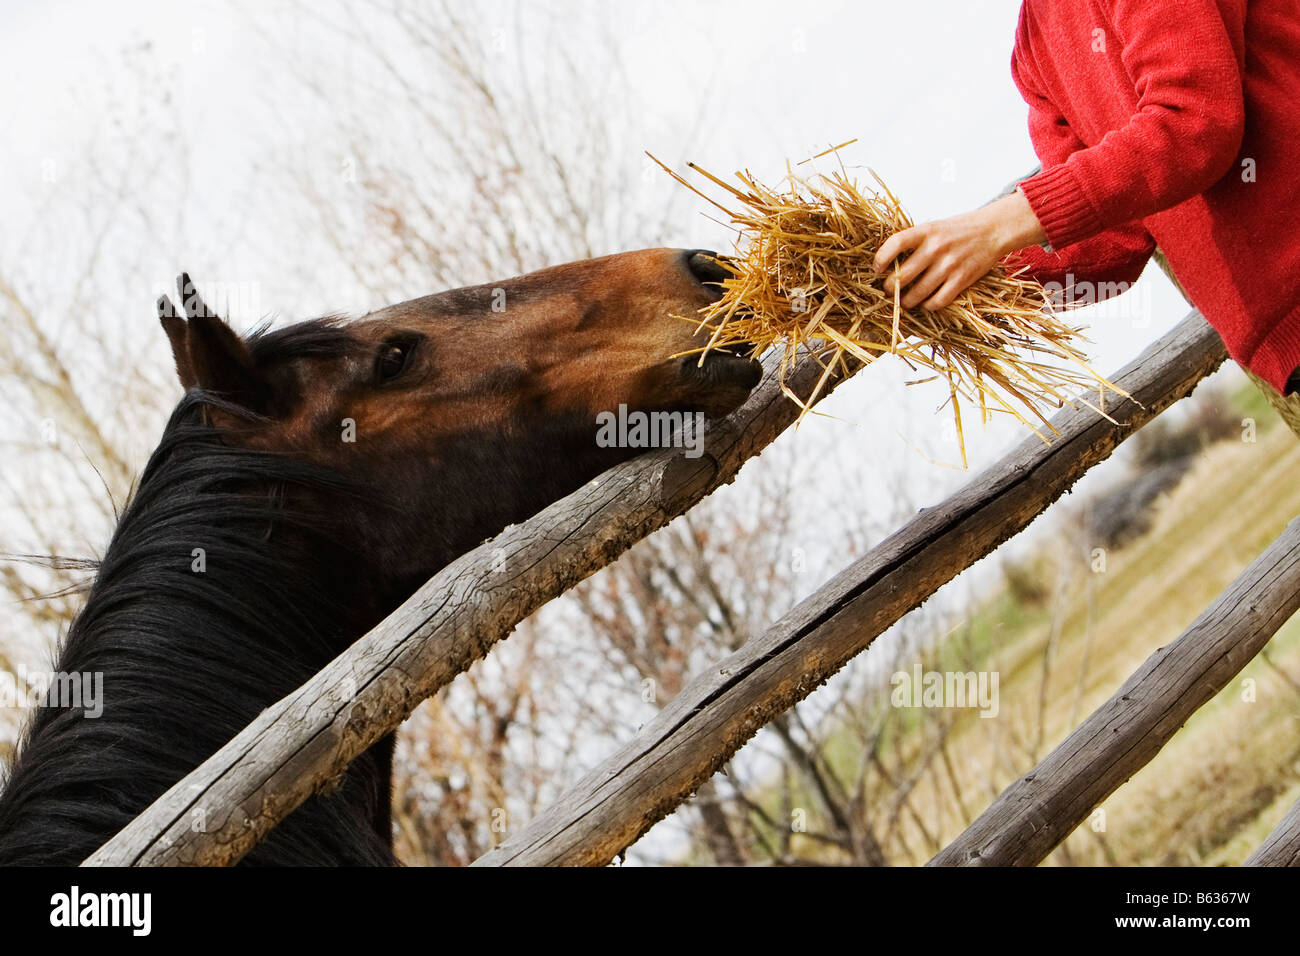 Person's hand holding hay et nourrir un cheval Banque D'Images